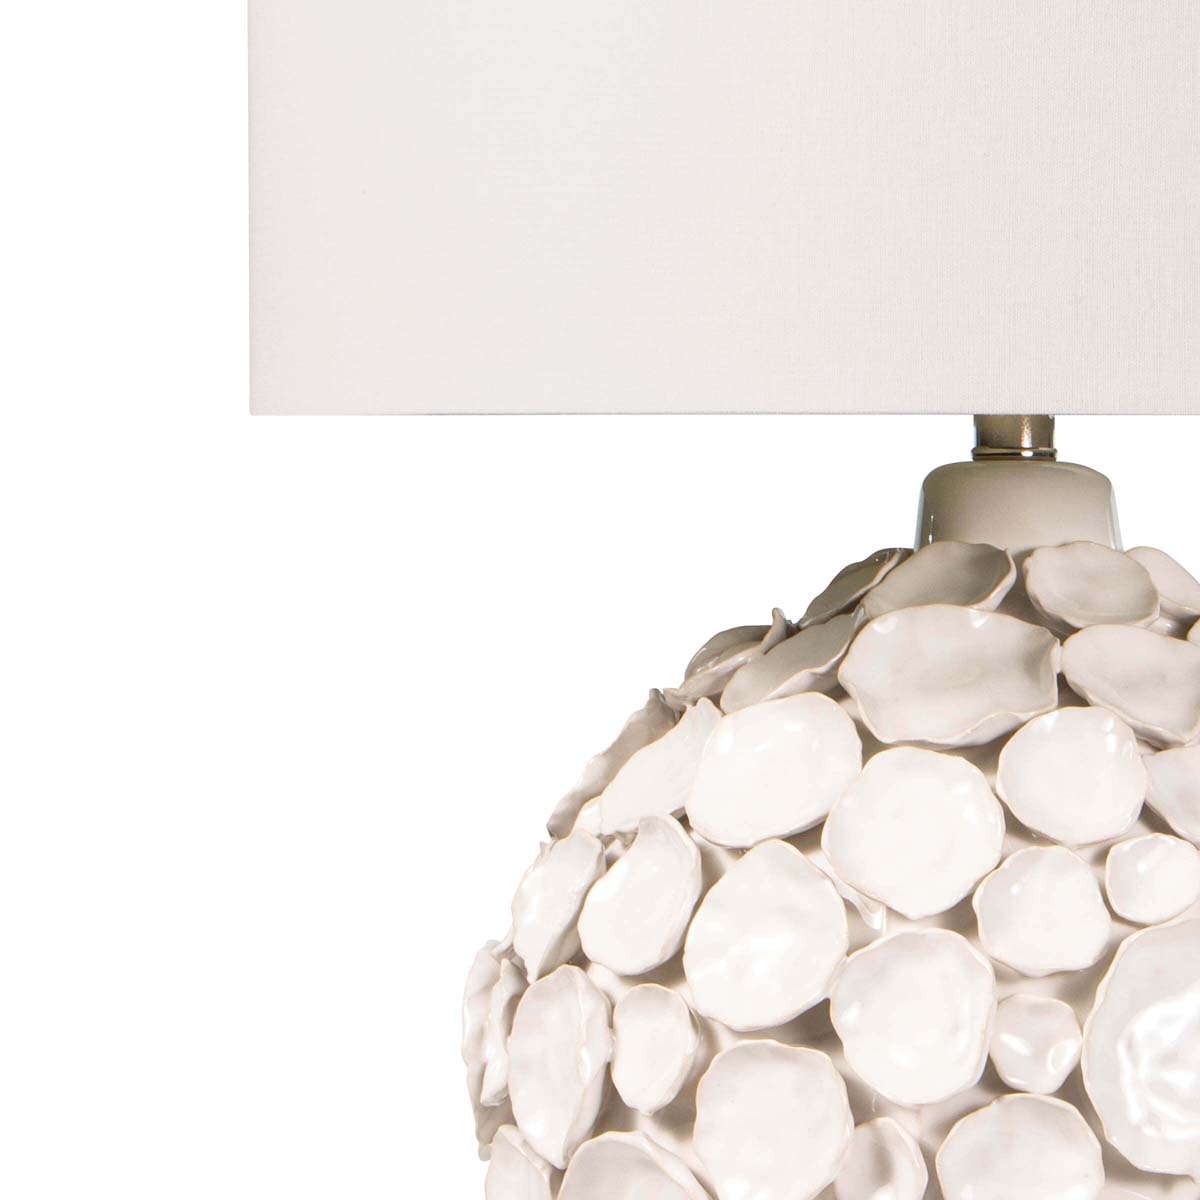 Regina Andrew Lucia Ceramic Table Lamp (White)